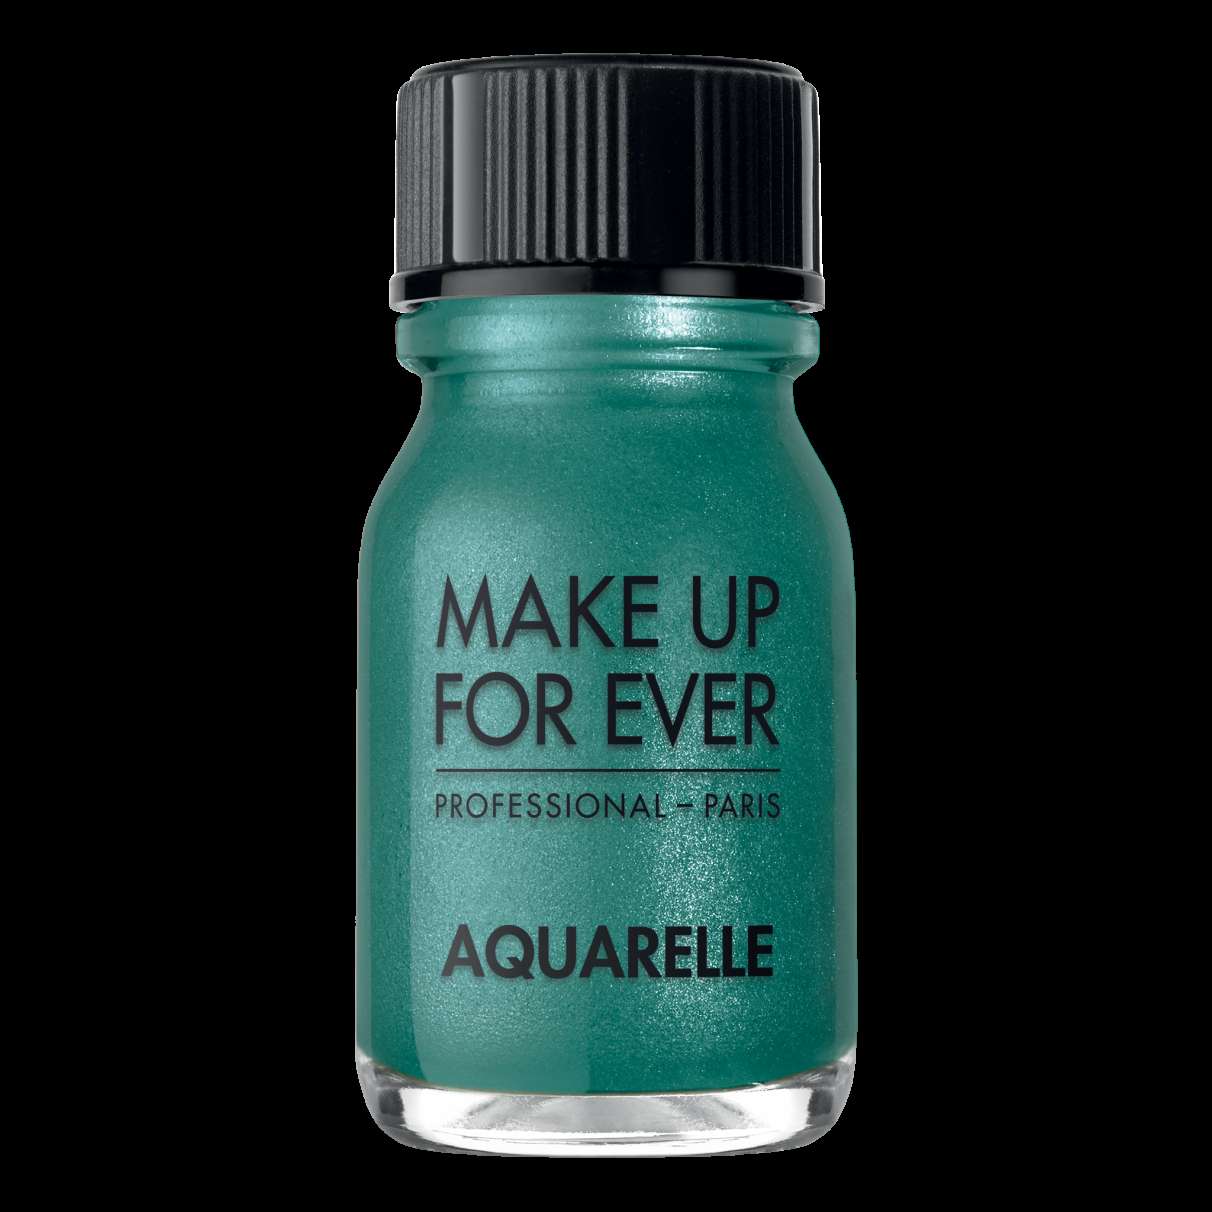 Aquarelle di Make up for ever